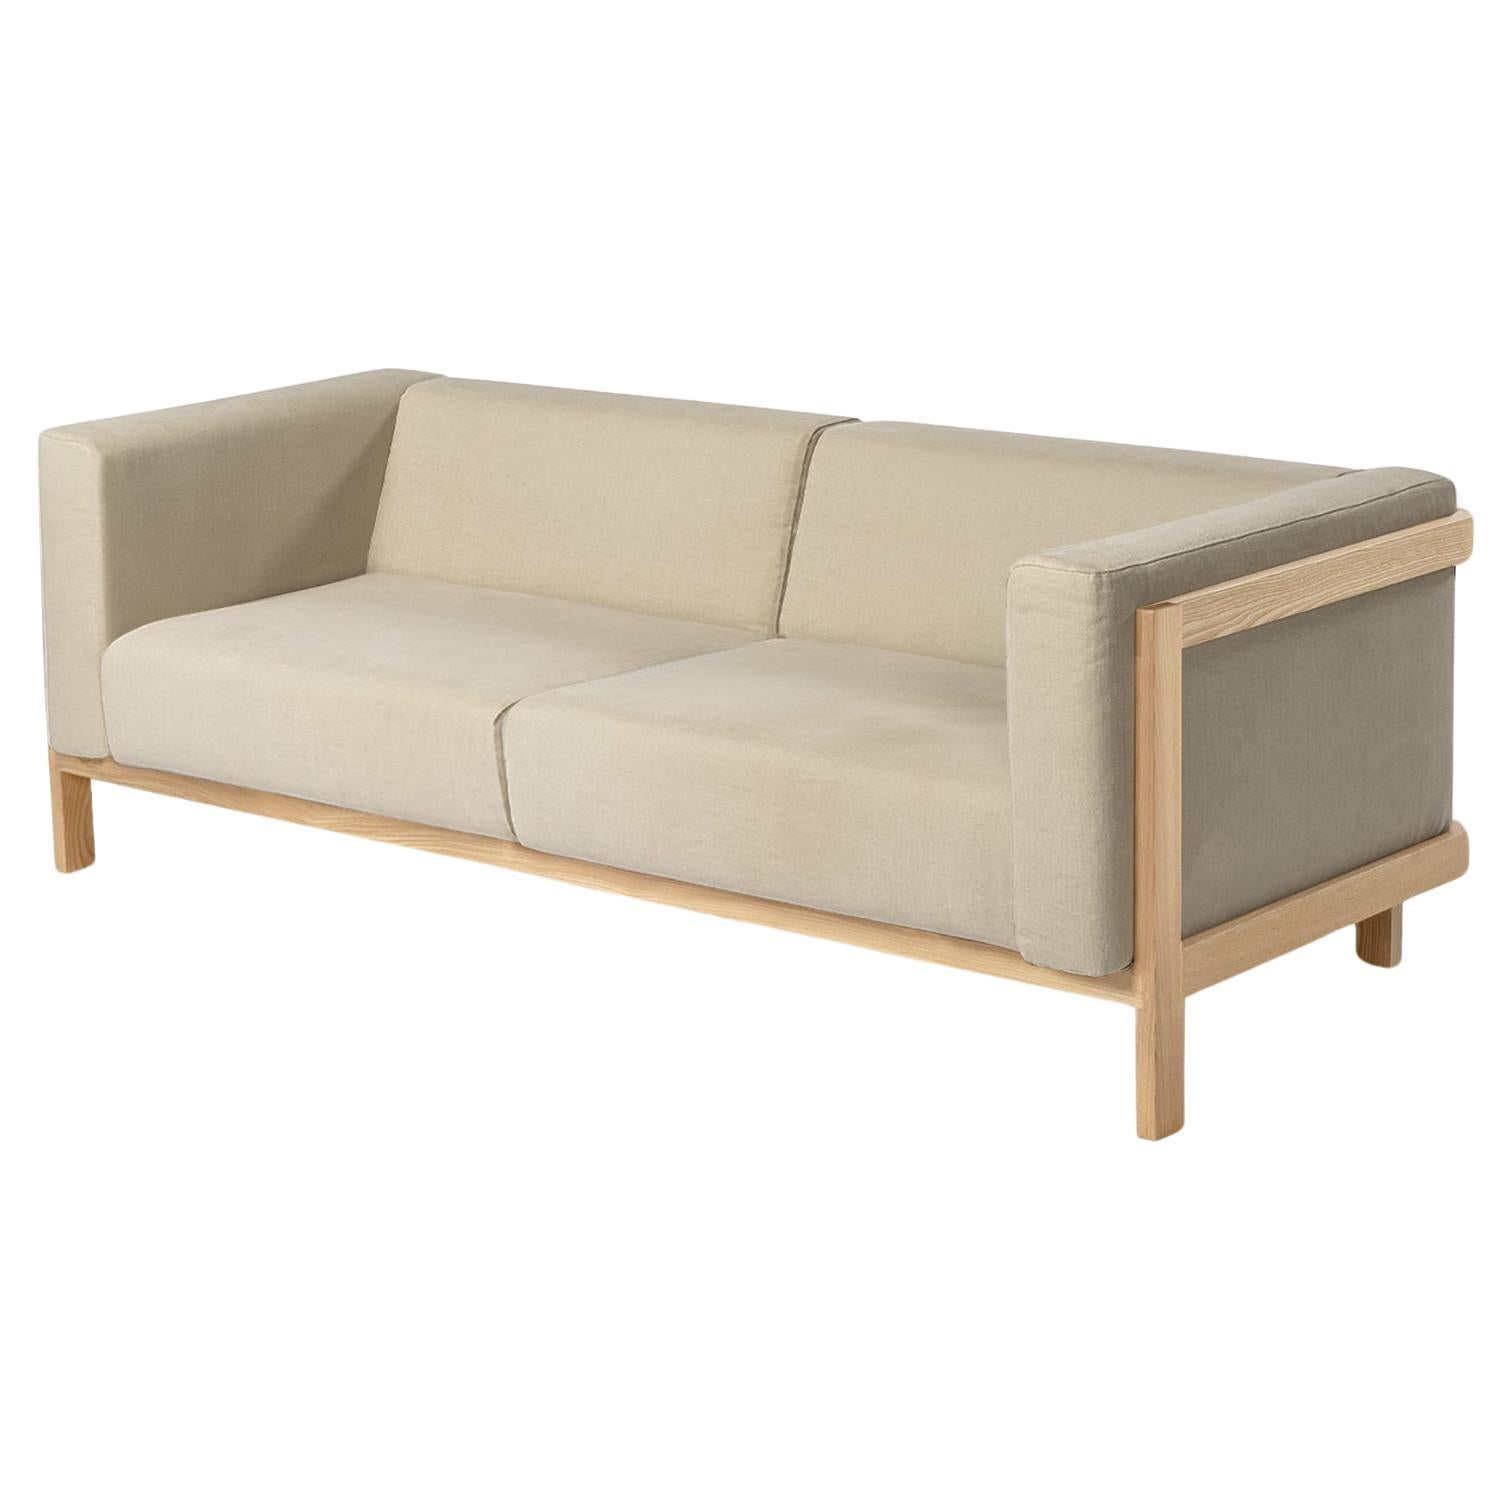 Minimalistisches dreisitziges Sofa aus Eschenholz – Stoff gepolstert